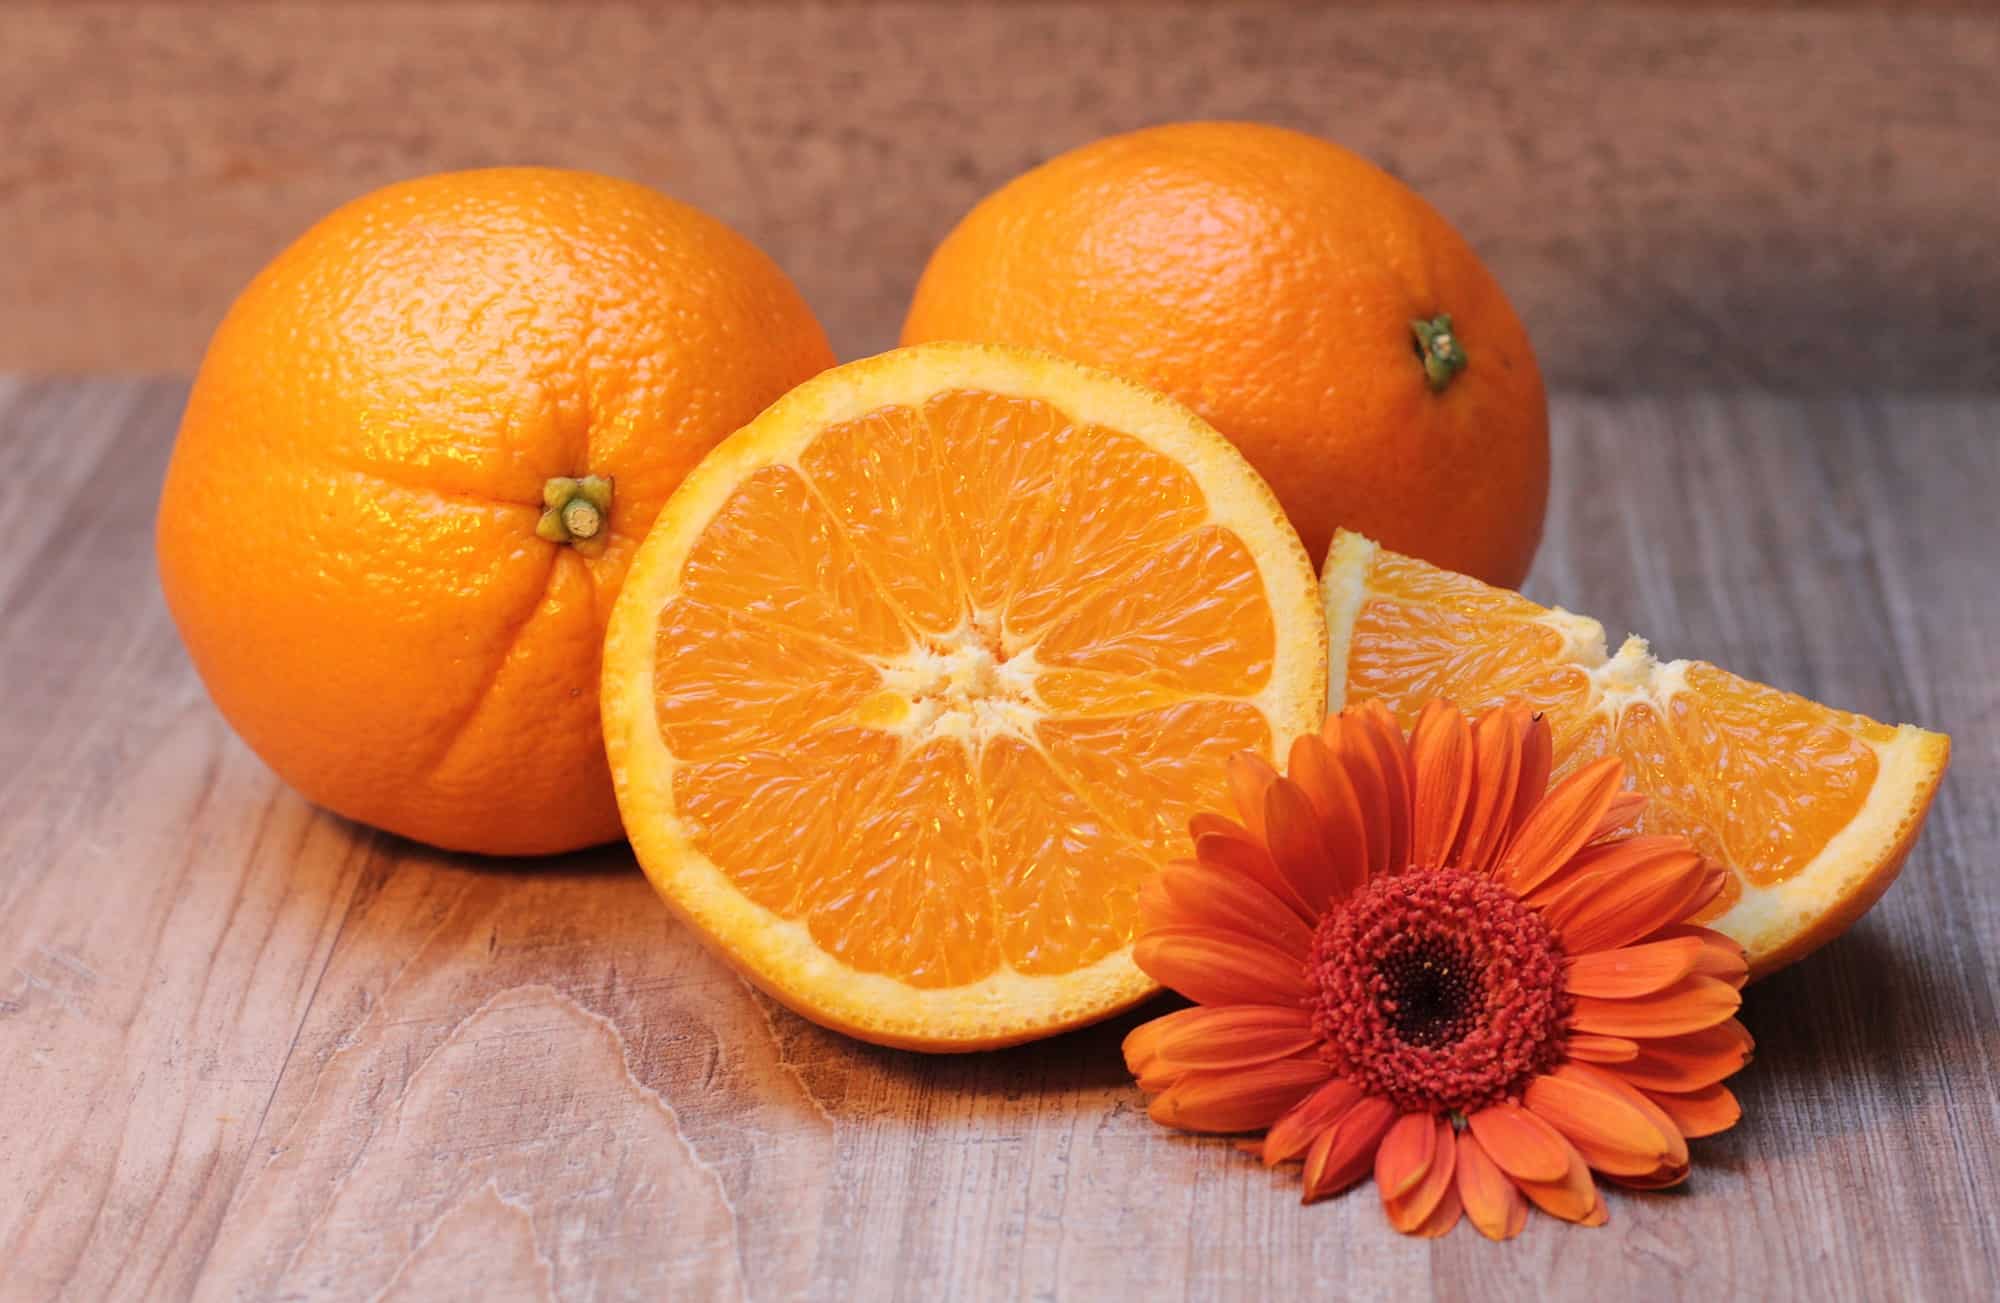 البرتقال في الصيام المتقطع